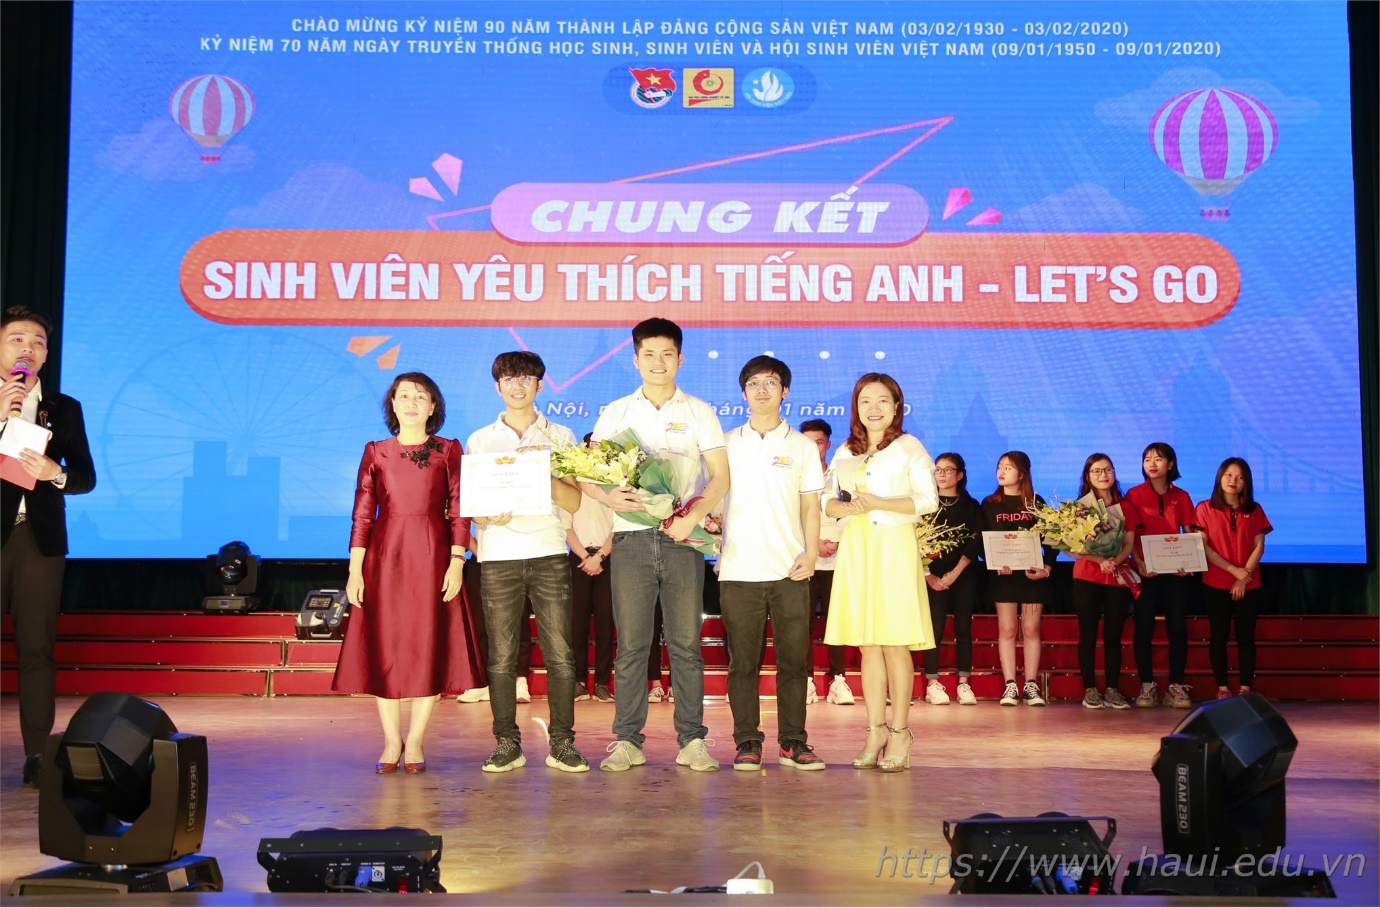 Đội sinh viên khoa Điện giành giải Nhất cuộc thi “Sinh viên yêu thích tiếng Anh Let's Go” 2019